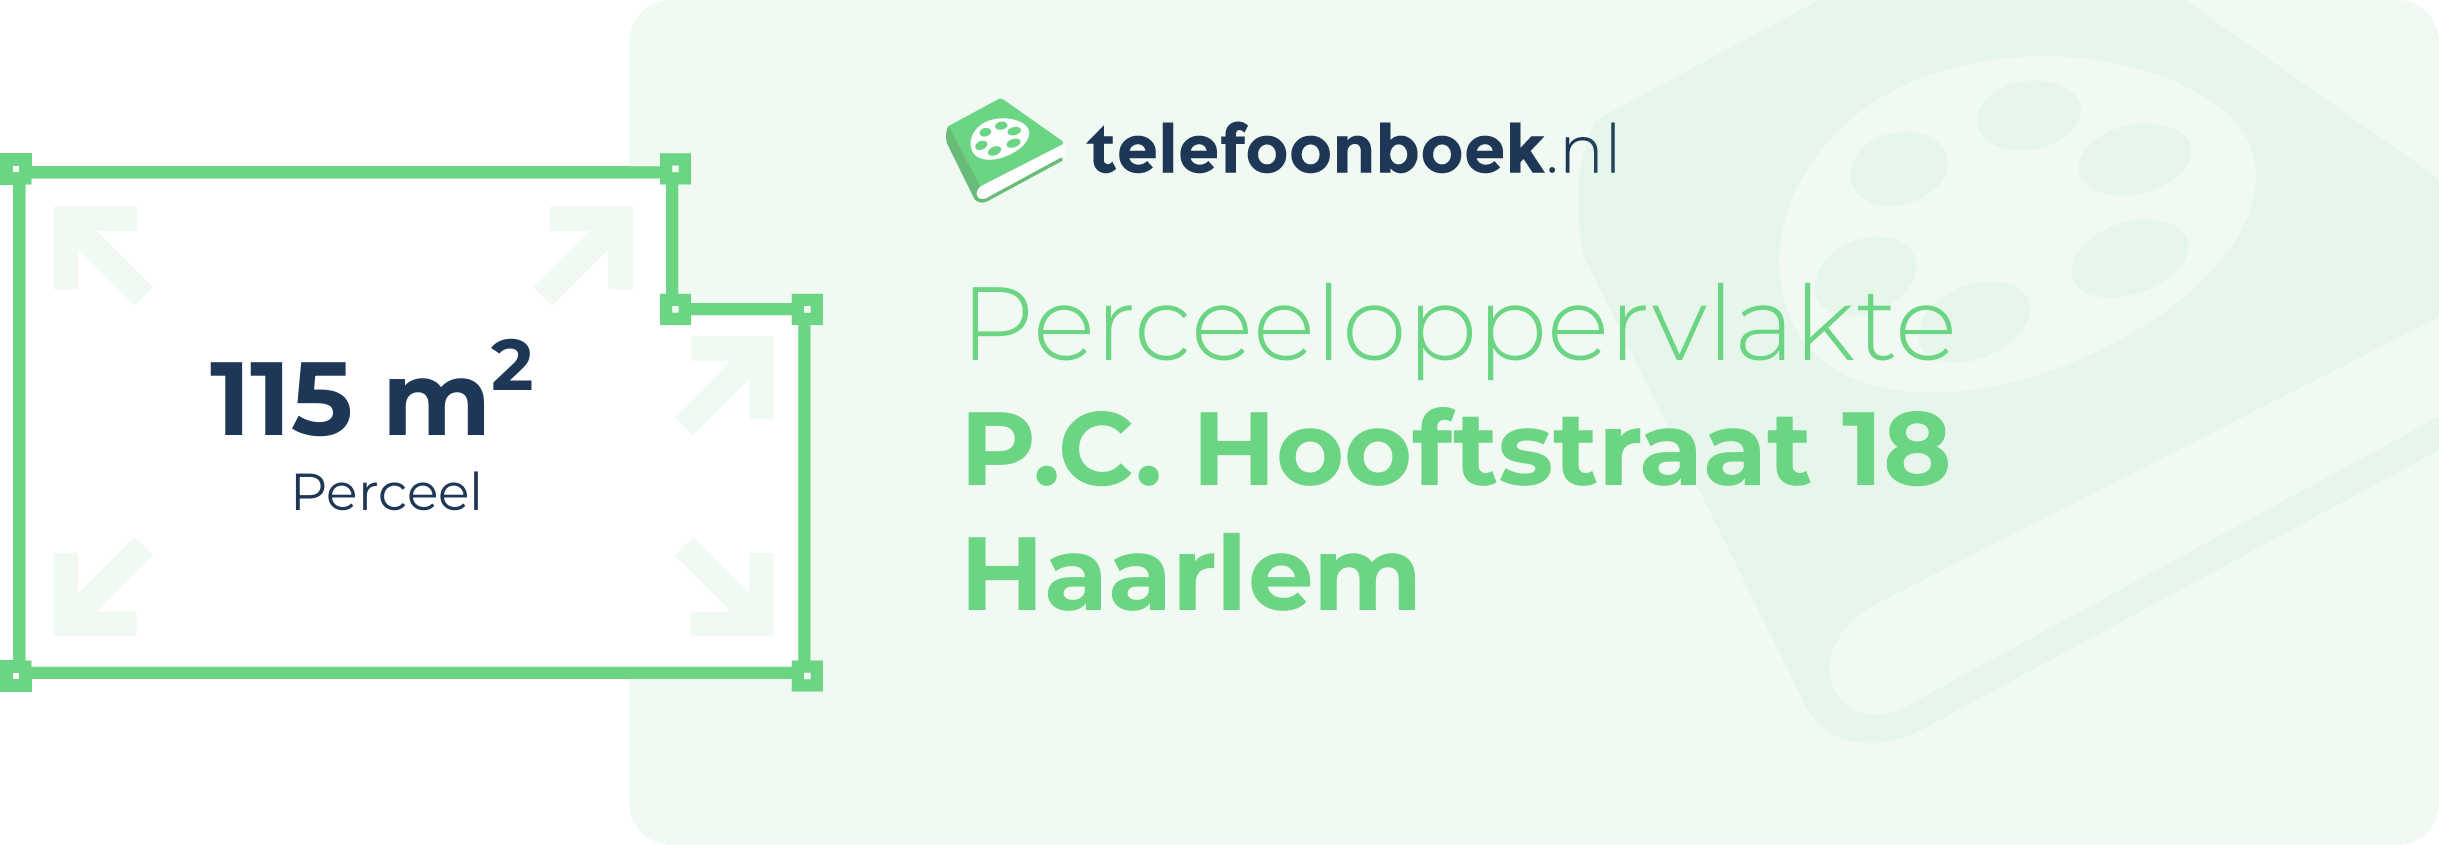 Perceeloppervlakte P.C. Hooftstraat 18 Haarlem